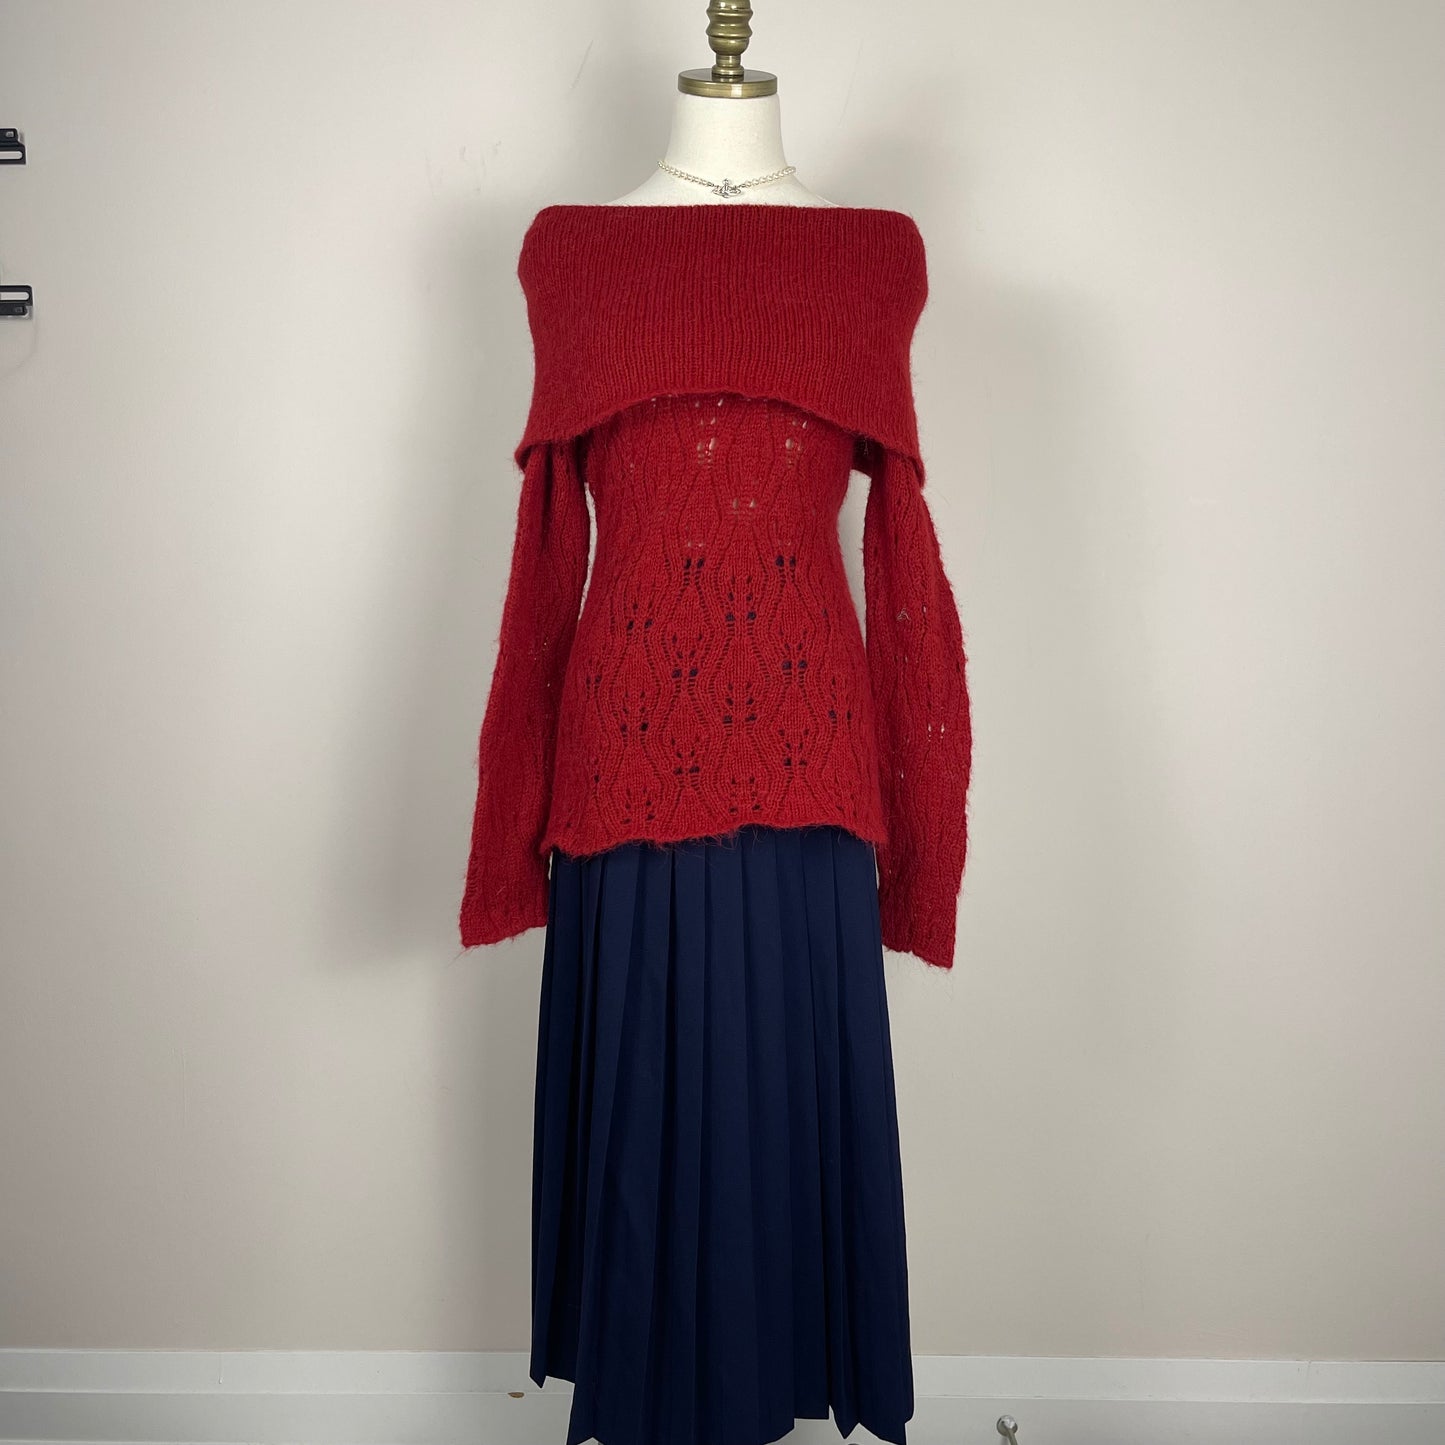 Vintage Navy Wool Pleated Maxi Skirt